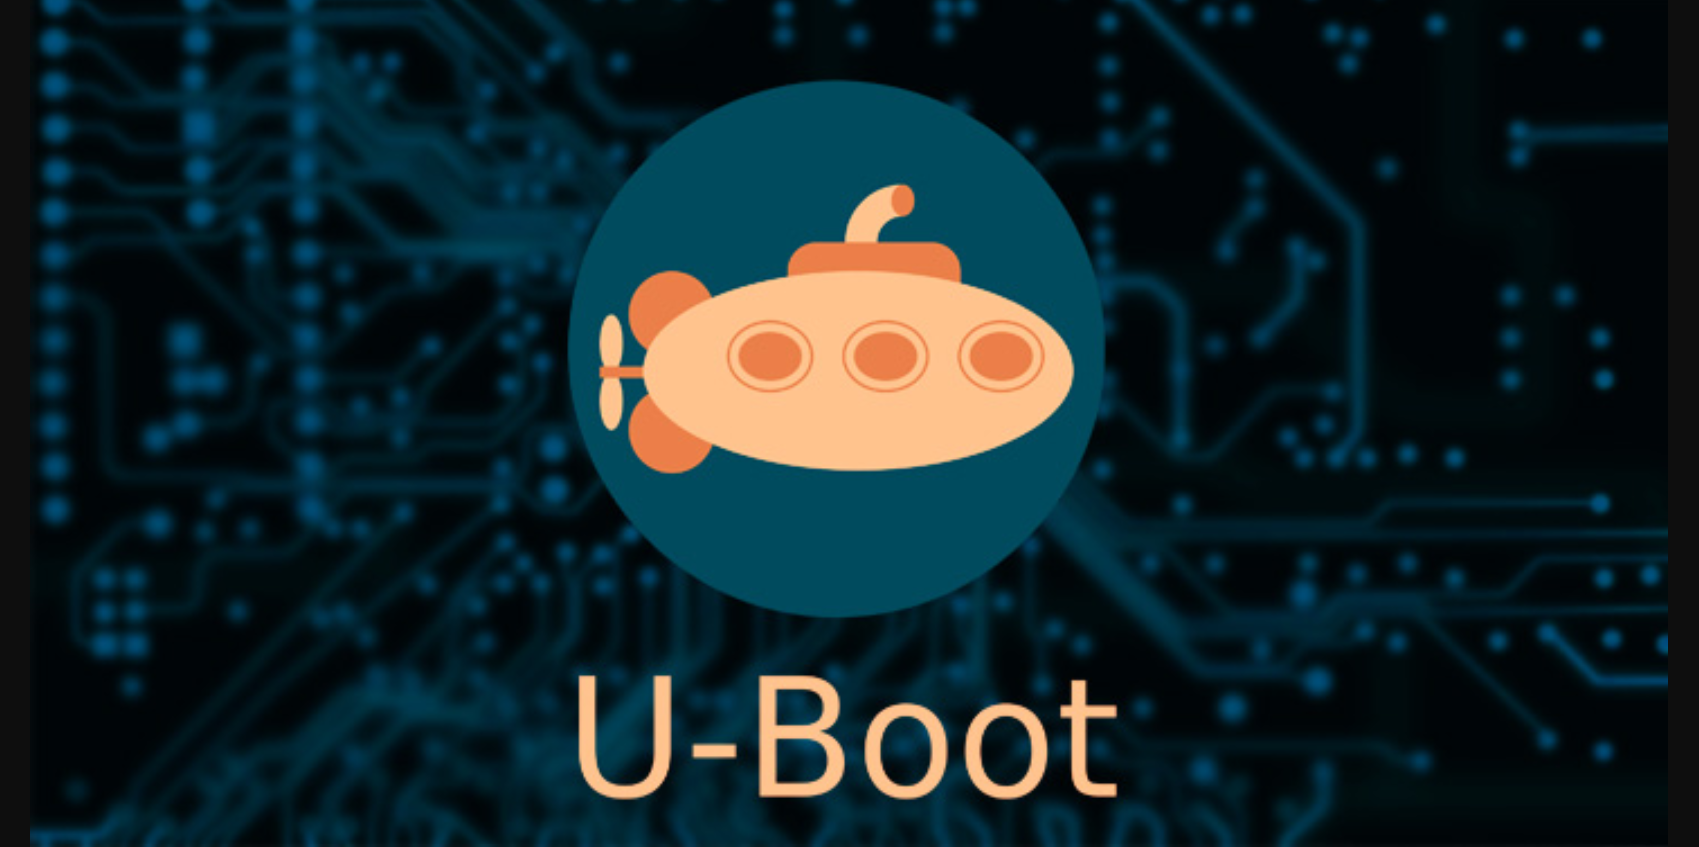 U-Boot finalmente consegue suporte HTTP e TCP para download de imagens